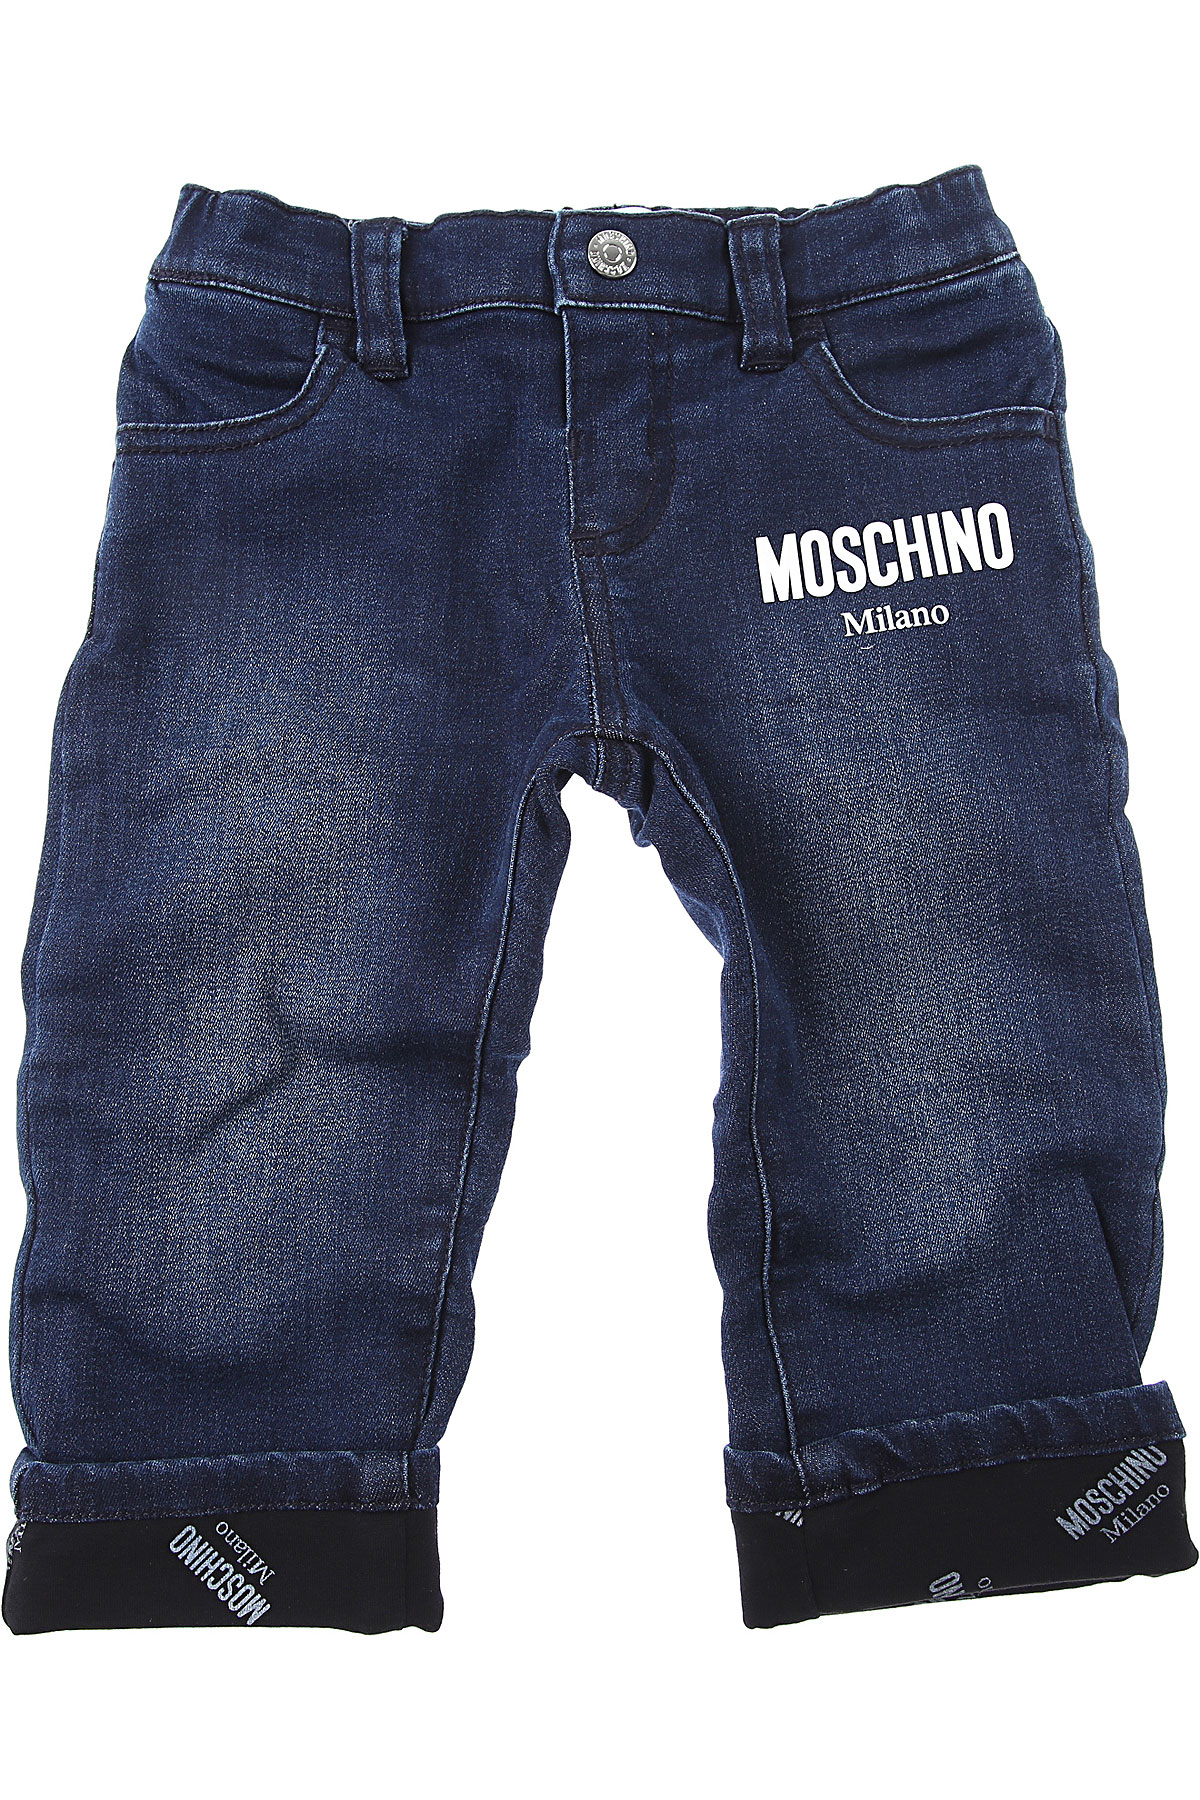 Moschino Baby Jeans für Jungen Günstig im Sale, Dunkel Denim Blau, Baumwolle, 2017, 12 M 18 M 2Y 3Y 9 M